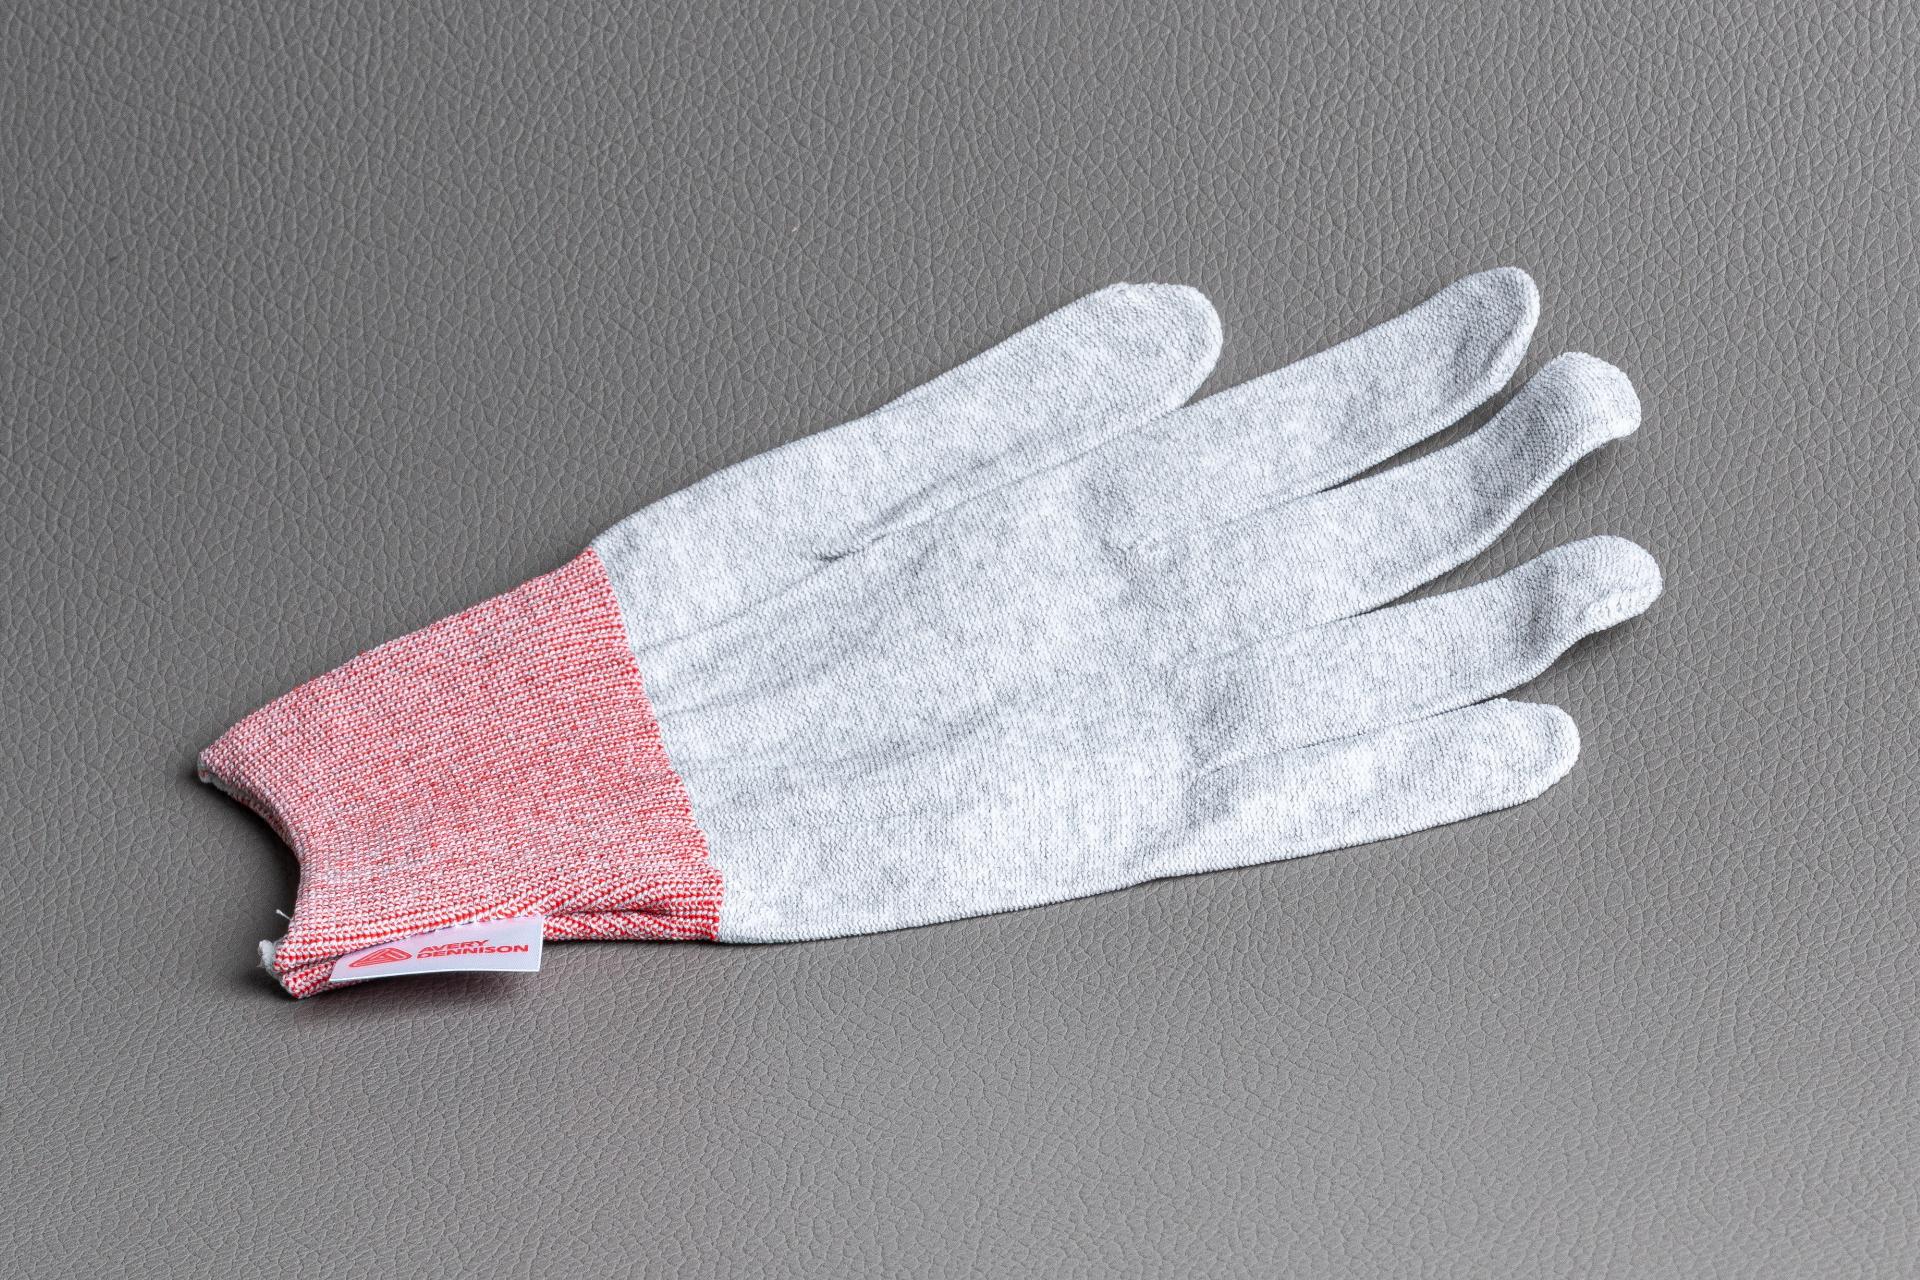 Foto: Avery Dennison Application Gloves / Verklebehandschuhe